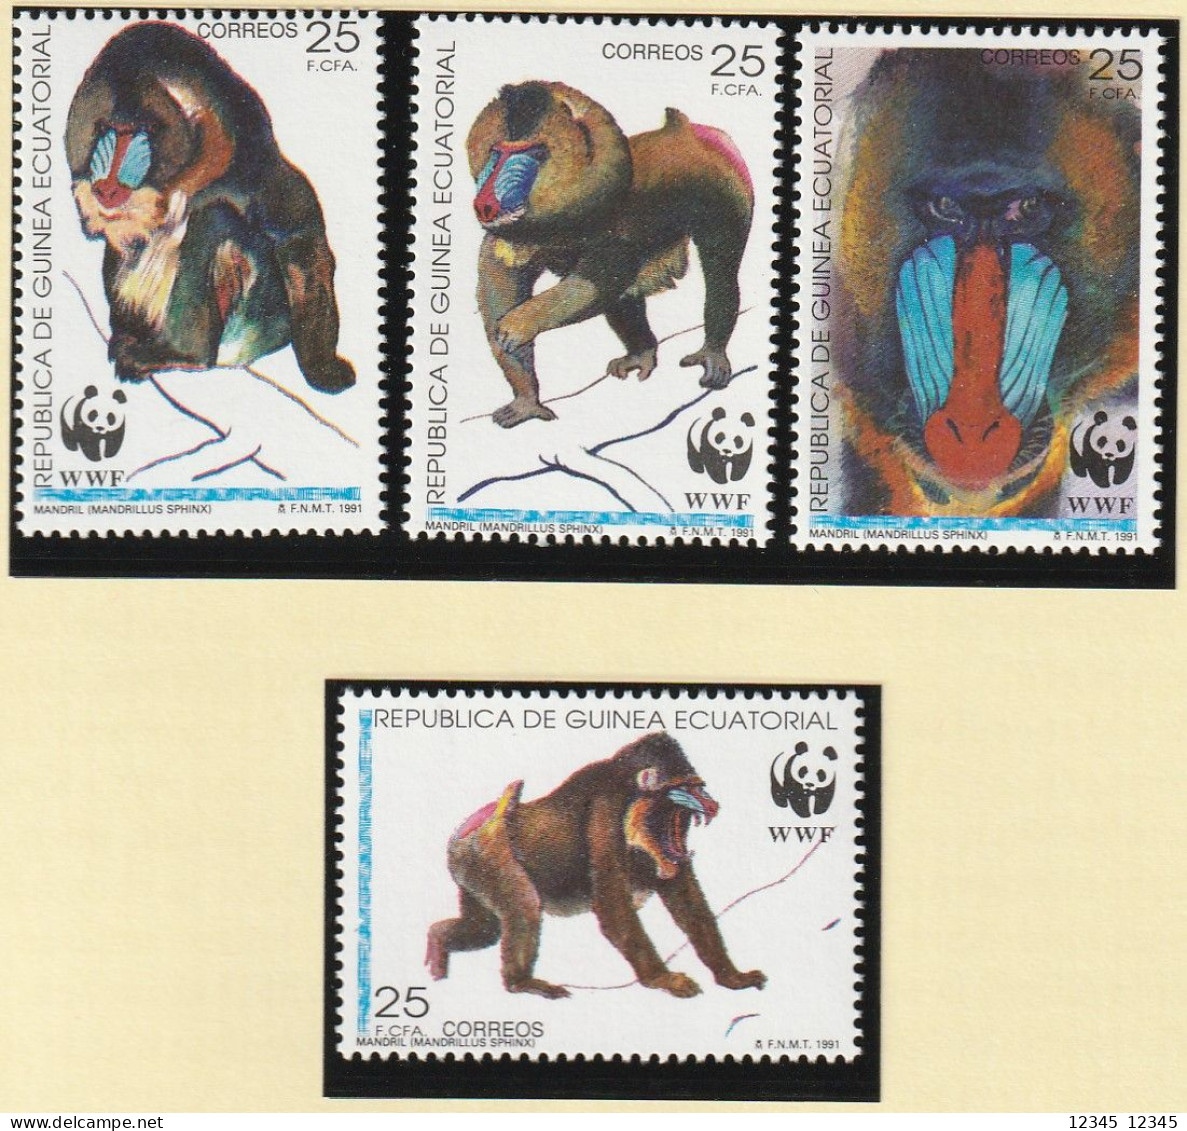 Equatoriaal Guinea 1991, Postfris MNH, WWF, Mandrill - Äquatorial-Guinea